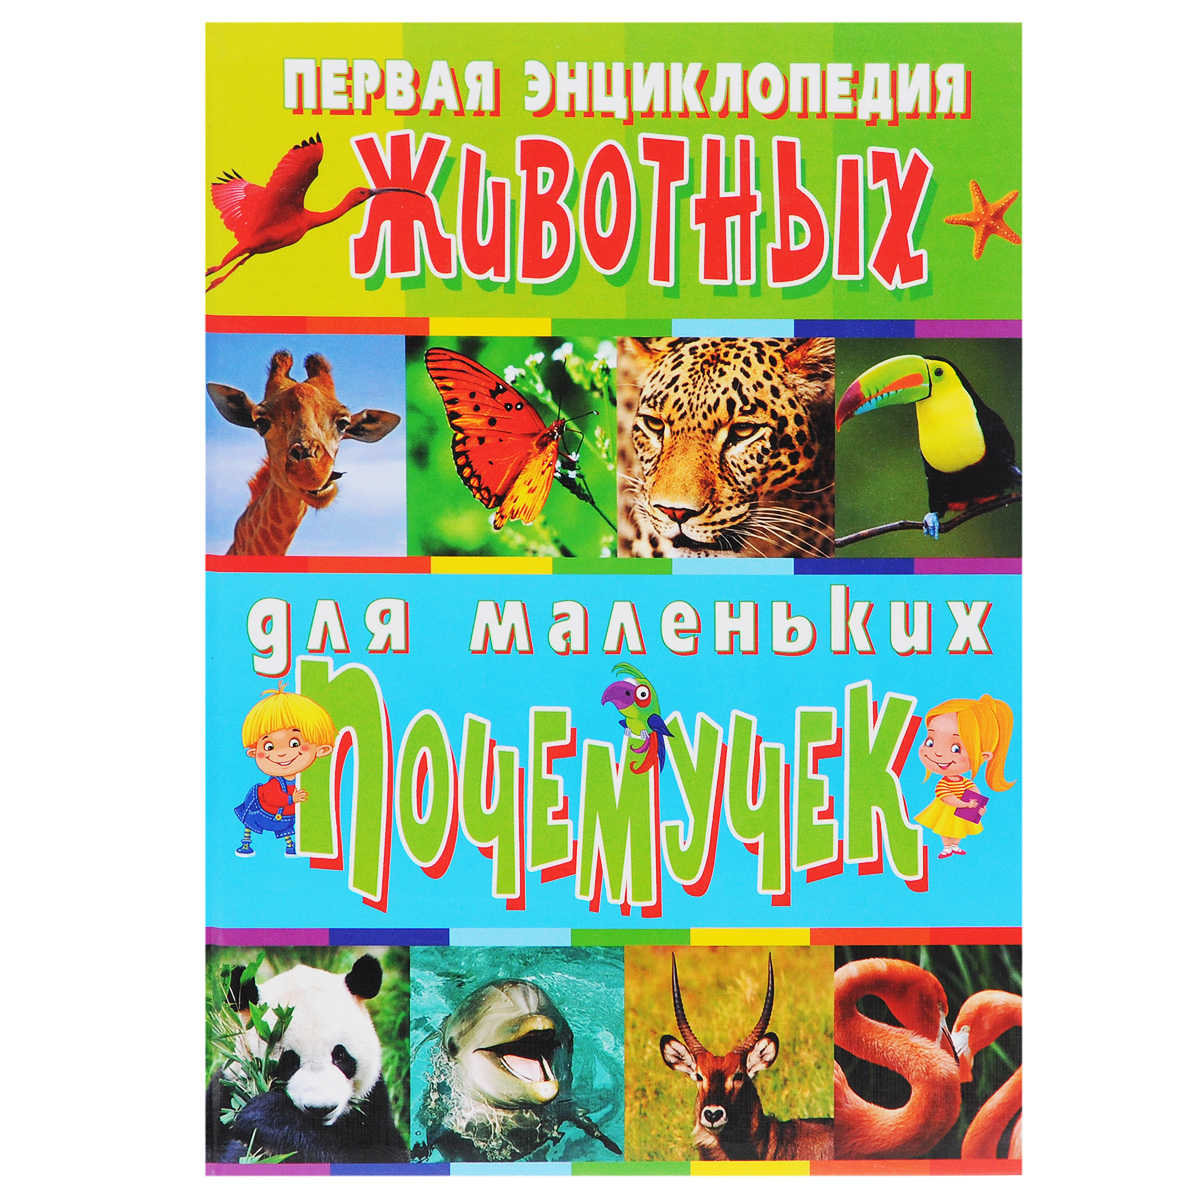 Первая энциклопедия животных для маленьких почемучек. Т. В. Скиба, С. В. Рублев